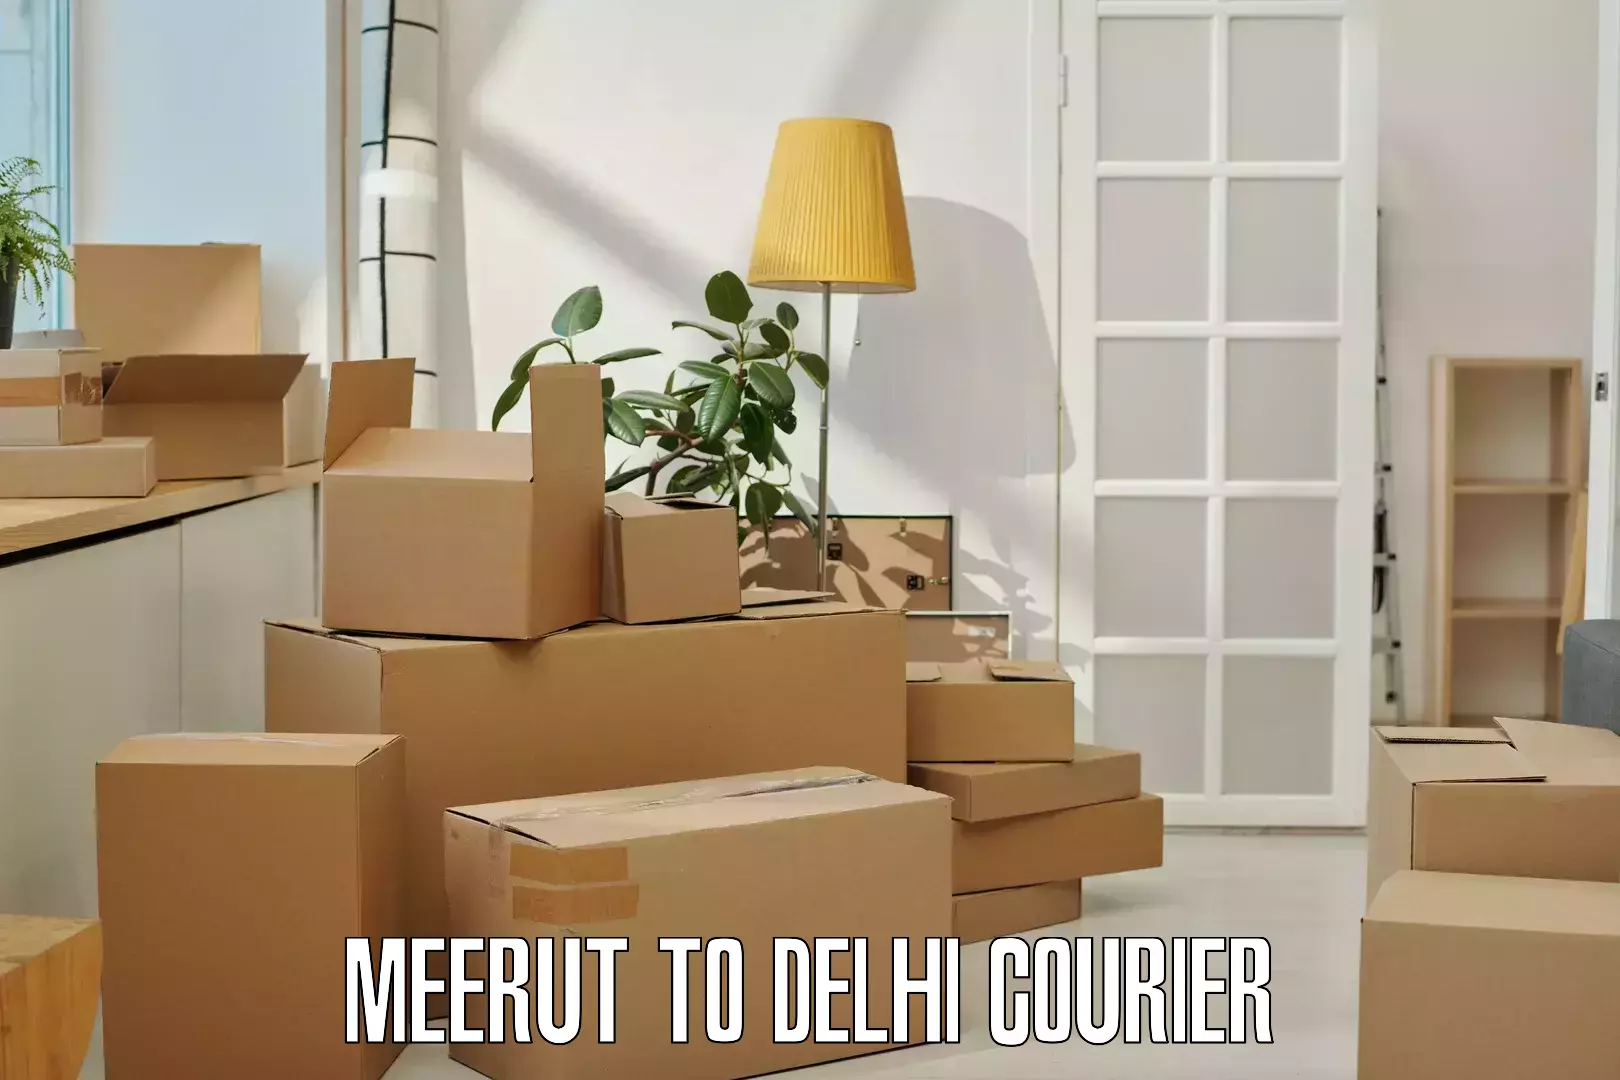 Doorstep delivery service Meerut to Jhilmil